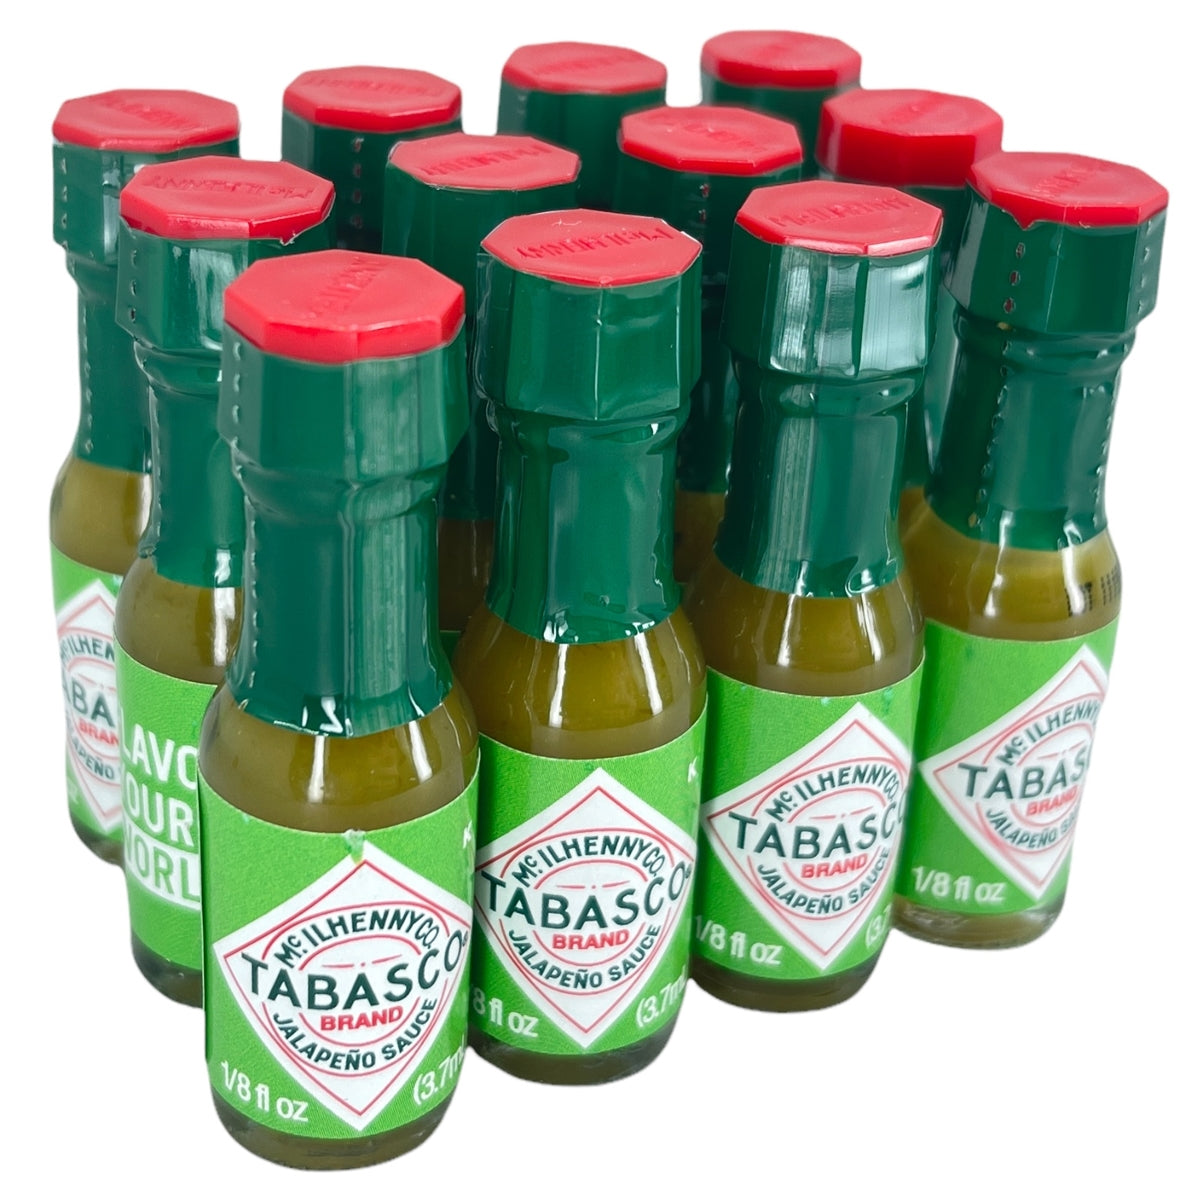 Condiment - 12 Tabasco Pepper Sauce Bottles (Green Bottle)